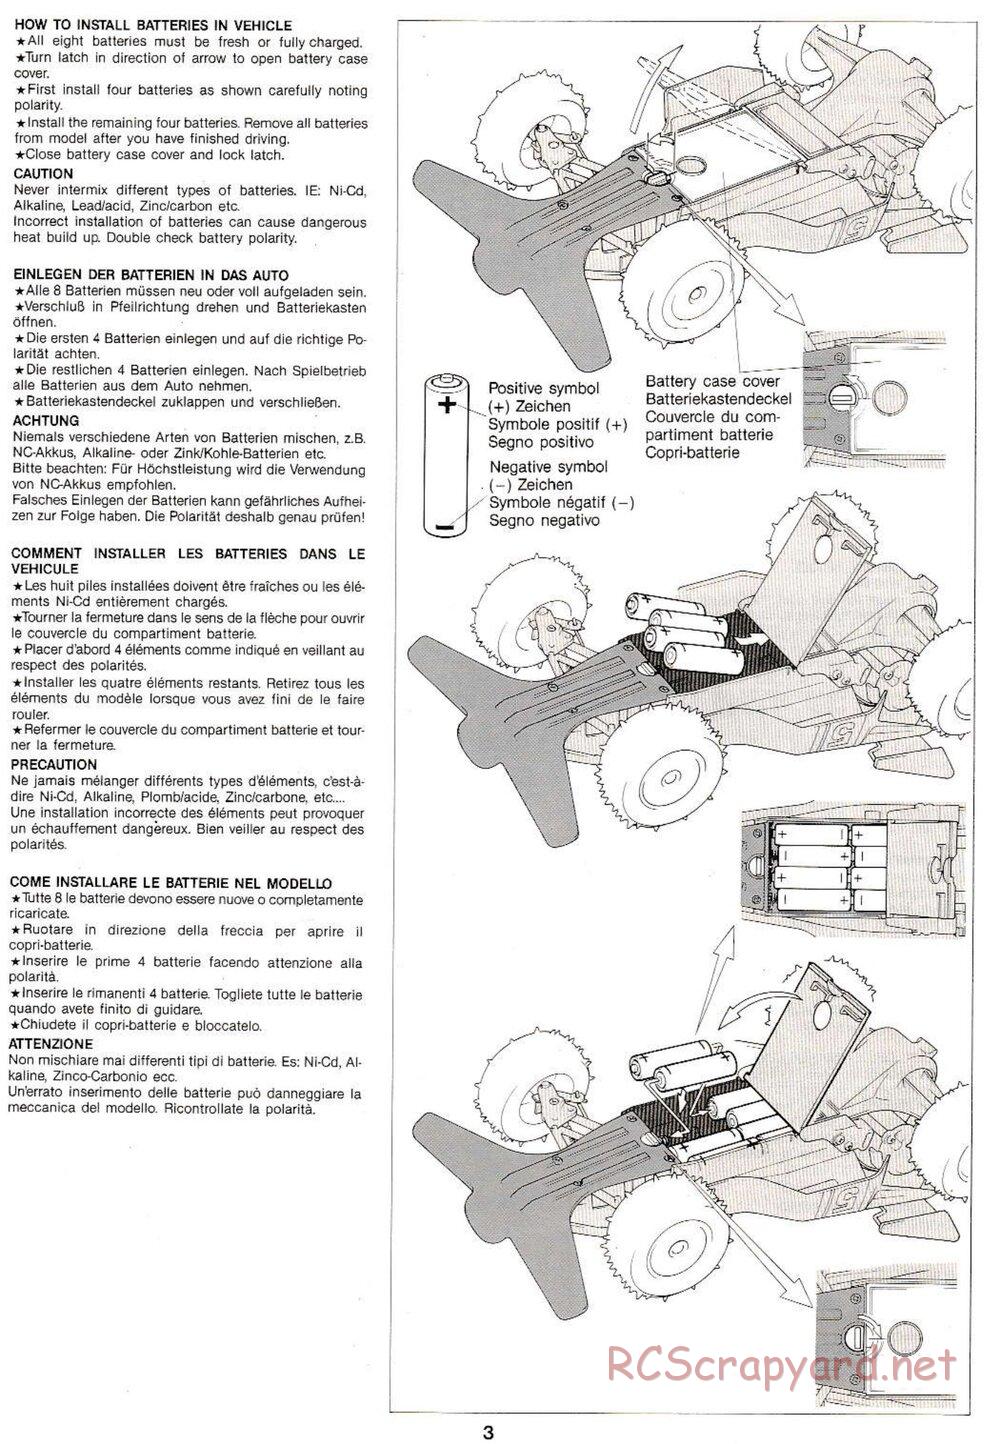 Tamiya - Thunder Shot QD Chassis - Manual - Page 3